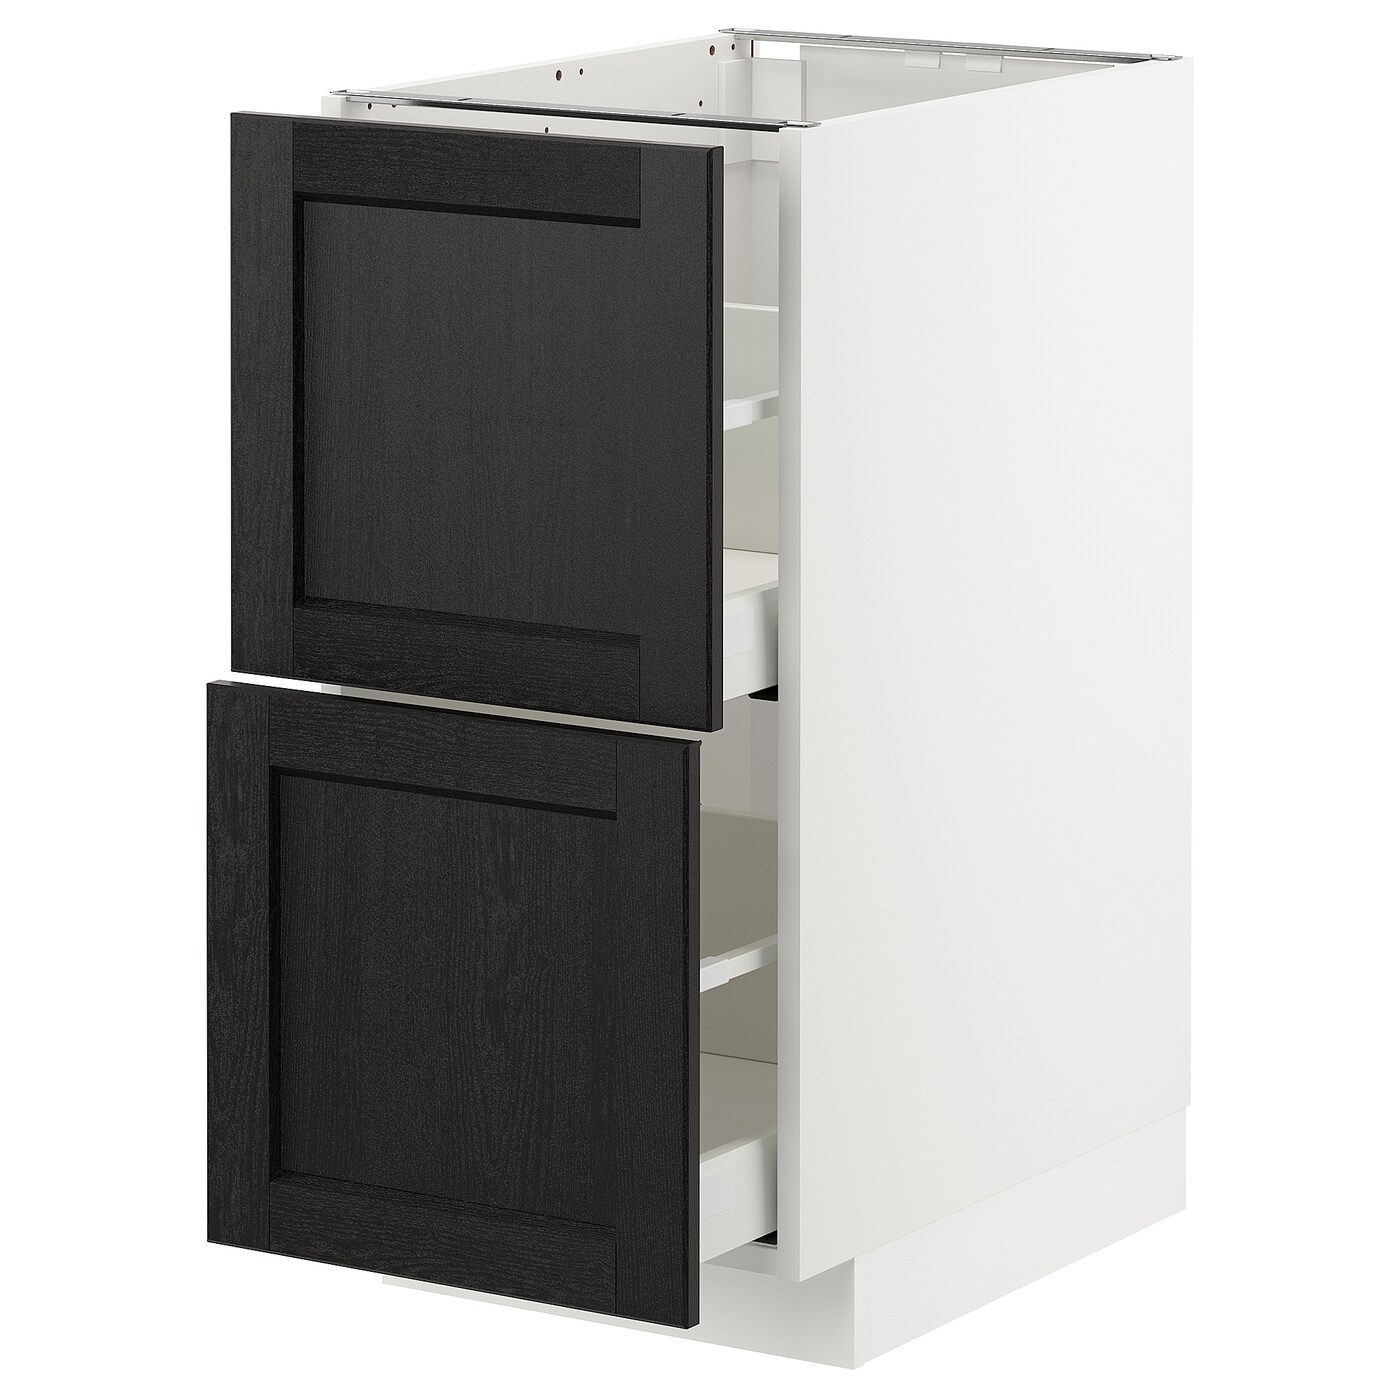 Напольный кухонный шкаф  - IKEA METOD MAXIMERA, 88x61,9x40см, белый/черный, МЕТОД МАКСИМЕРА ИКЕА